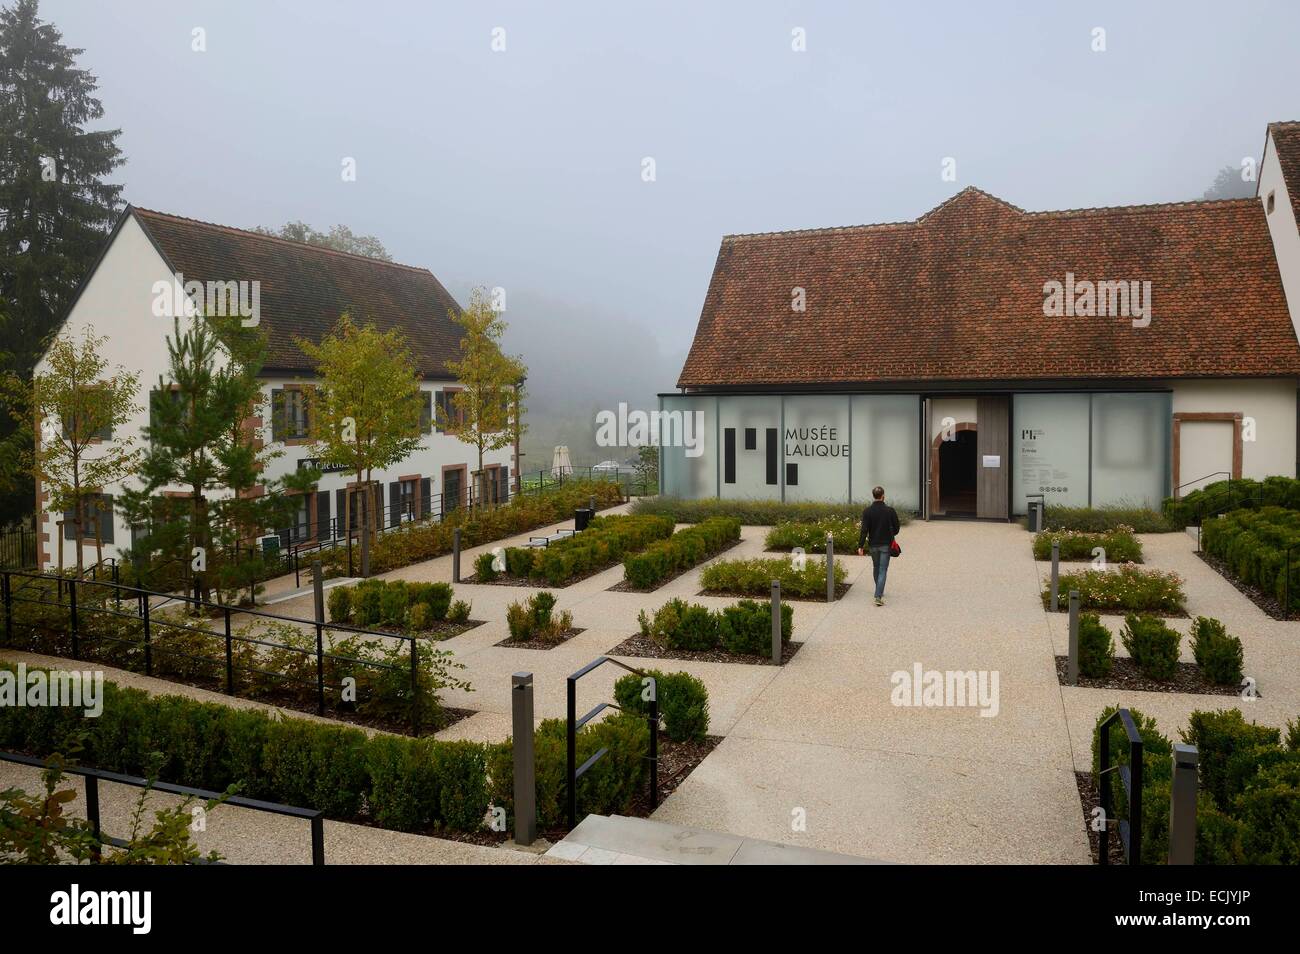 France, Bas Rhin, Wingen sur Moder, Lalique museum Stock Photo